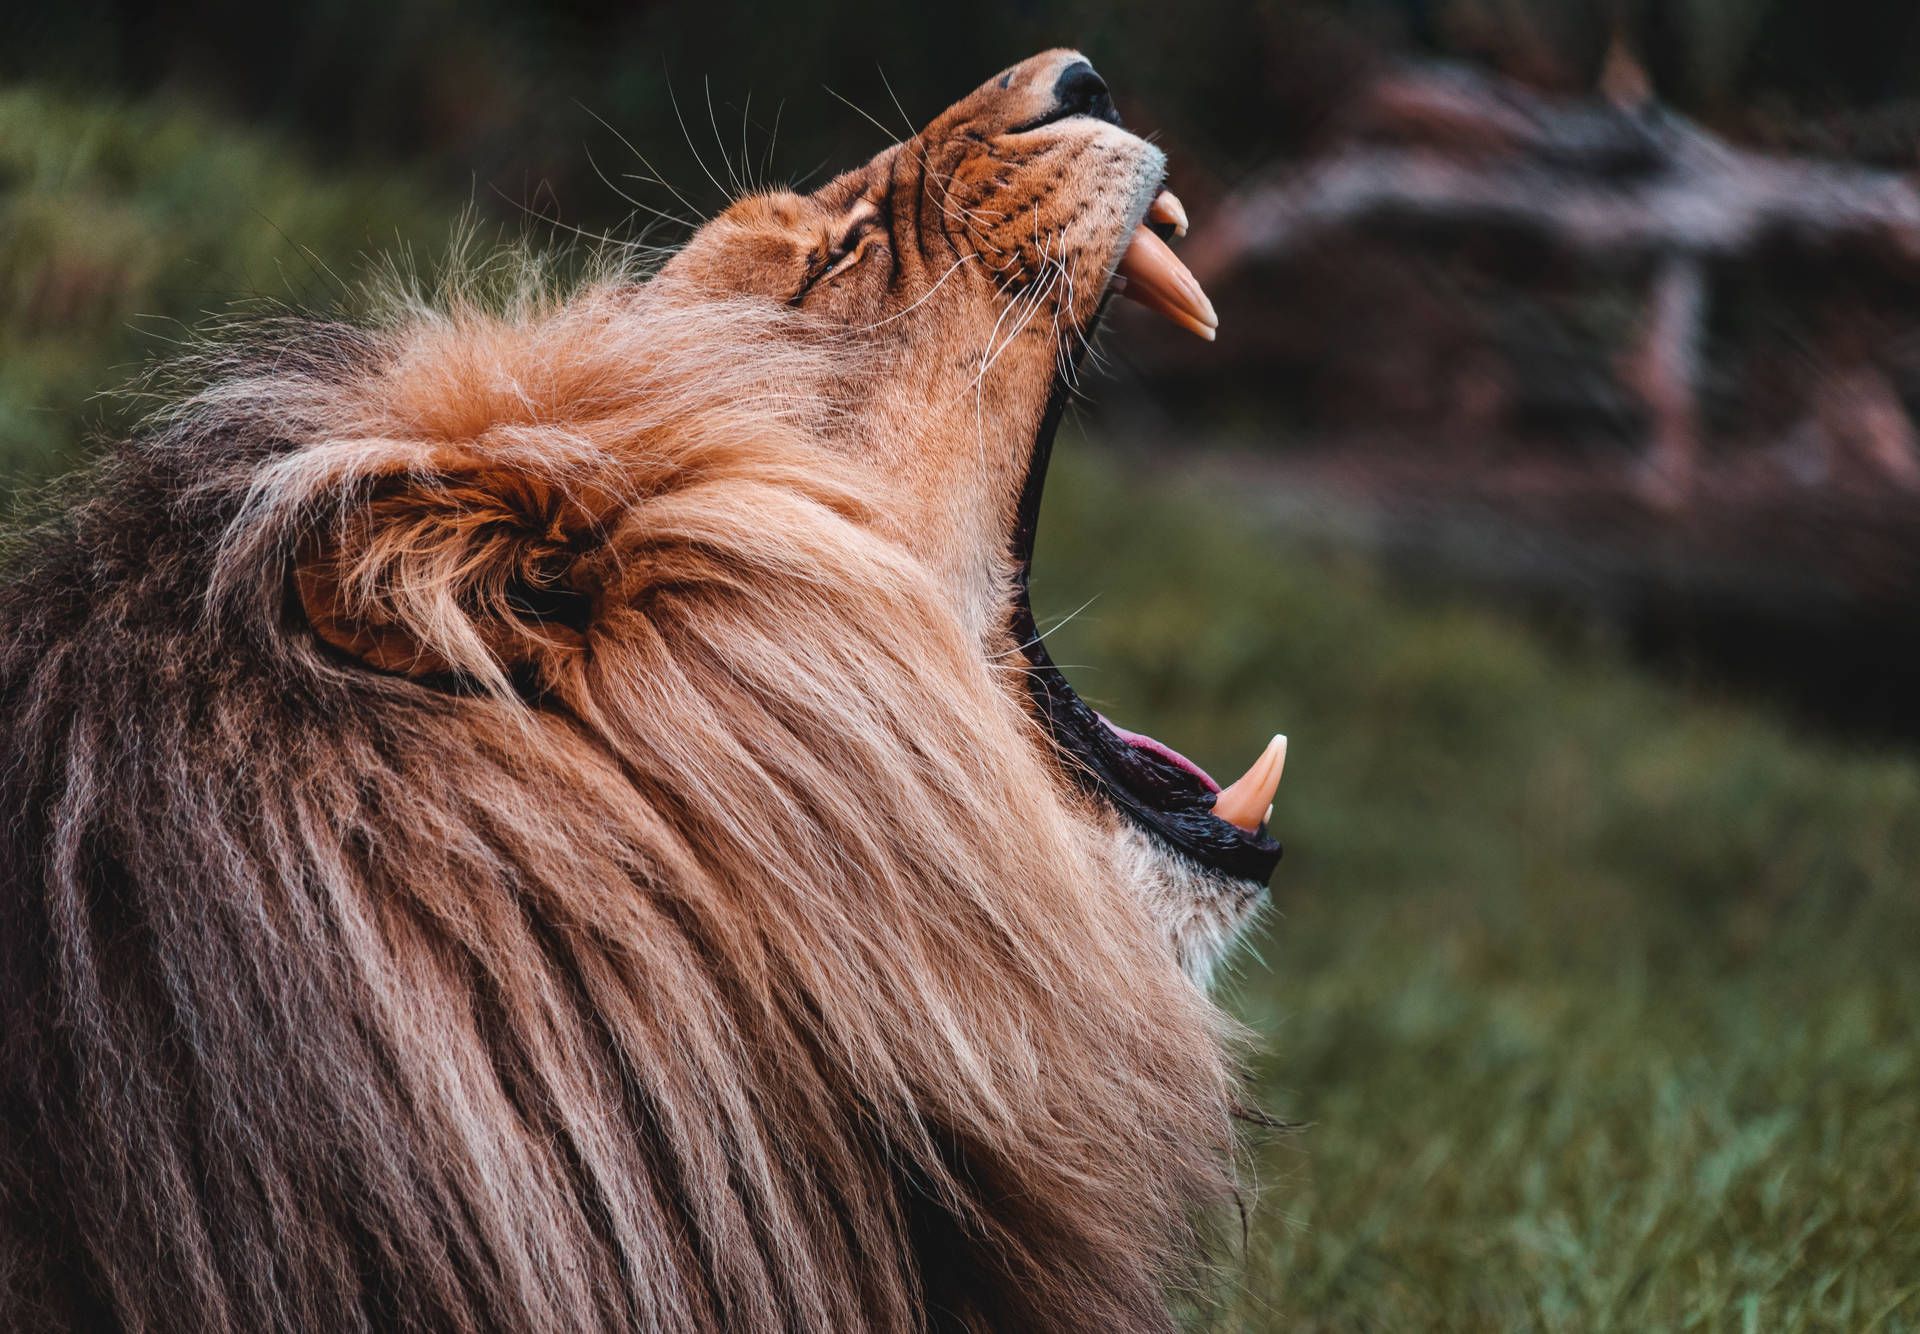 Roaring Lion Wild Animal Wallpaper